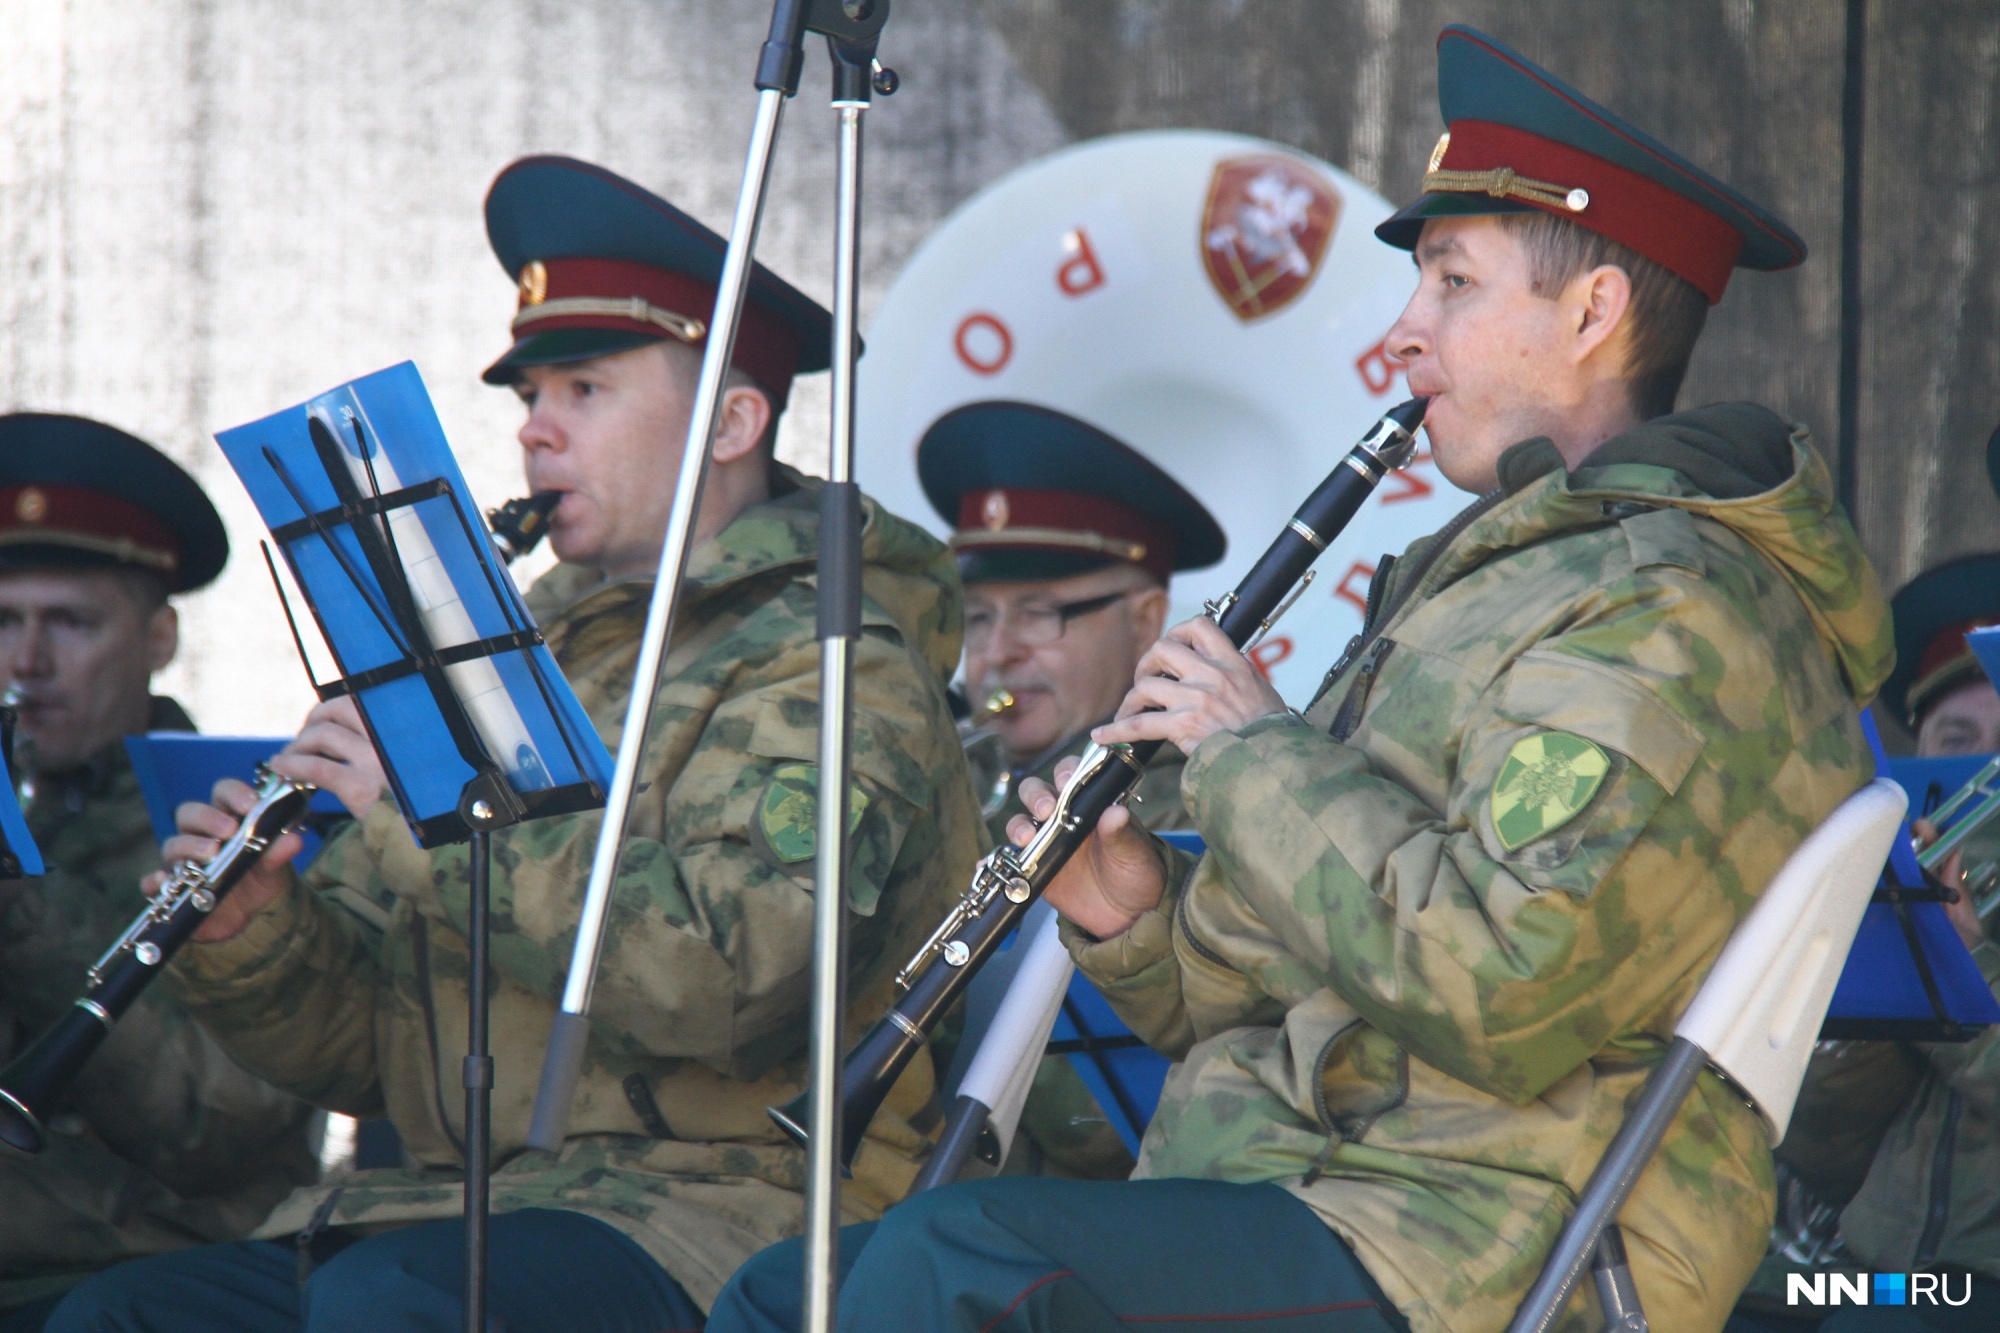 Музыкальные выходные начались в парке «Швейцария» в Нижнем Новгороде